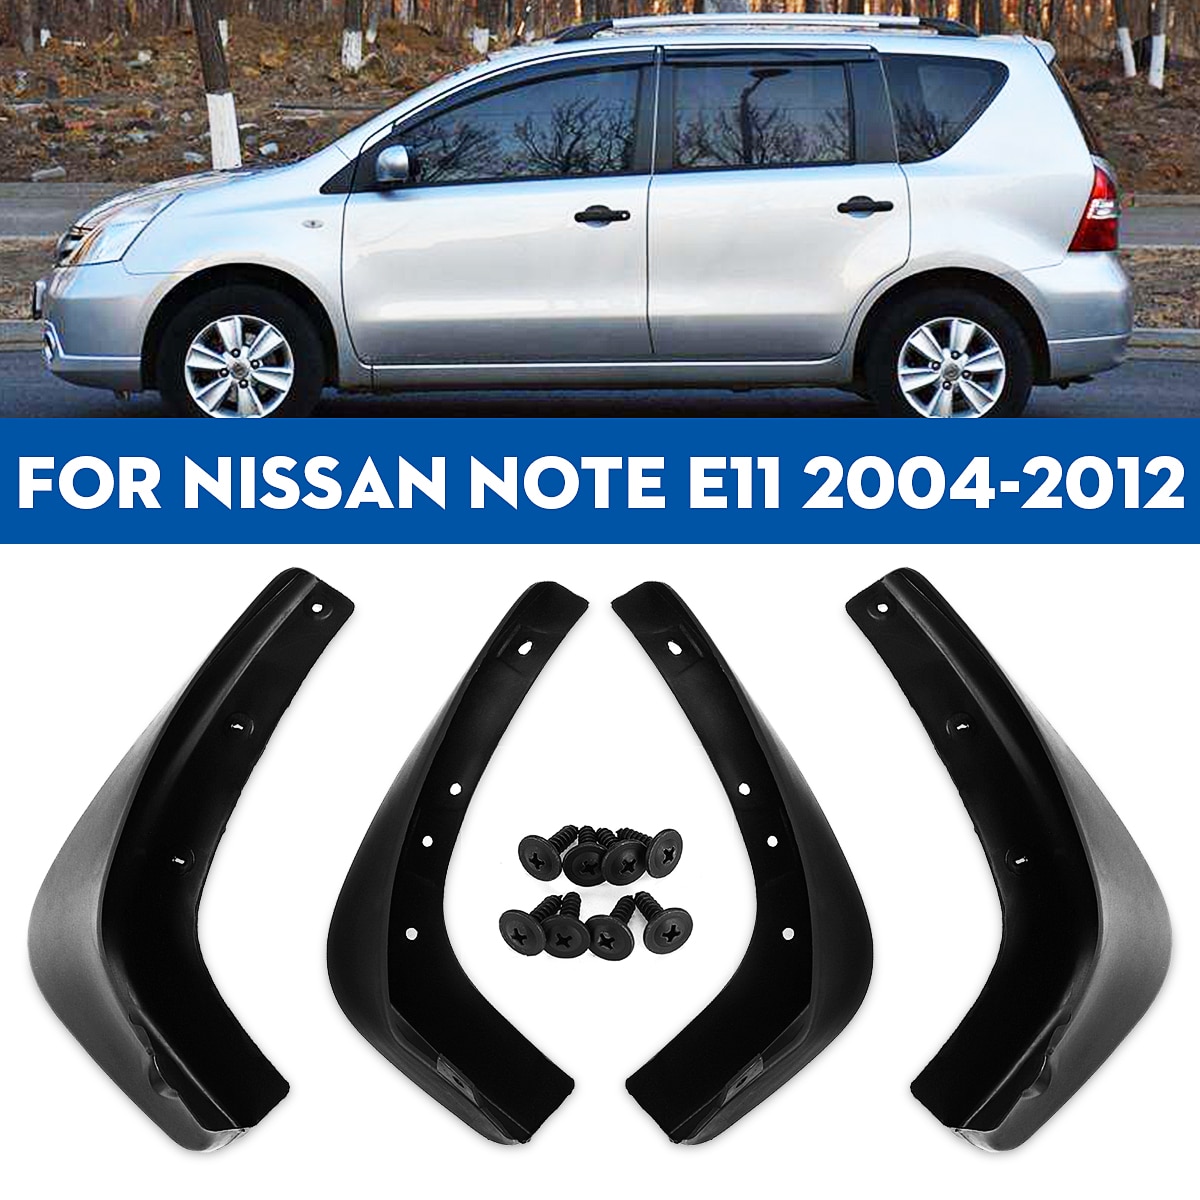 Auto Spatlappen voor Fender Spatborden Splash Guards Voor Achter Spatlappen Accessoires Voor Nissan Note E11 2004